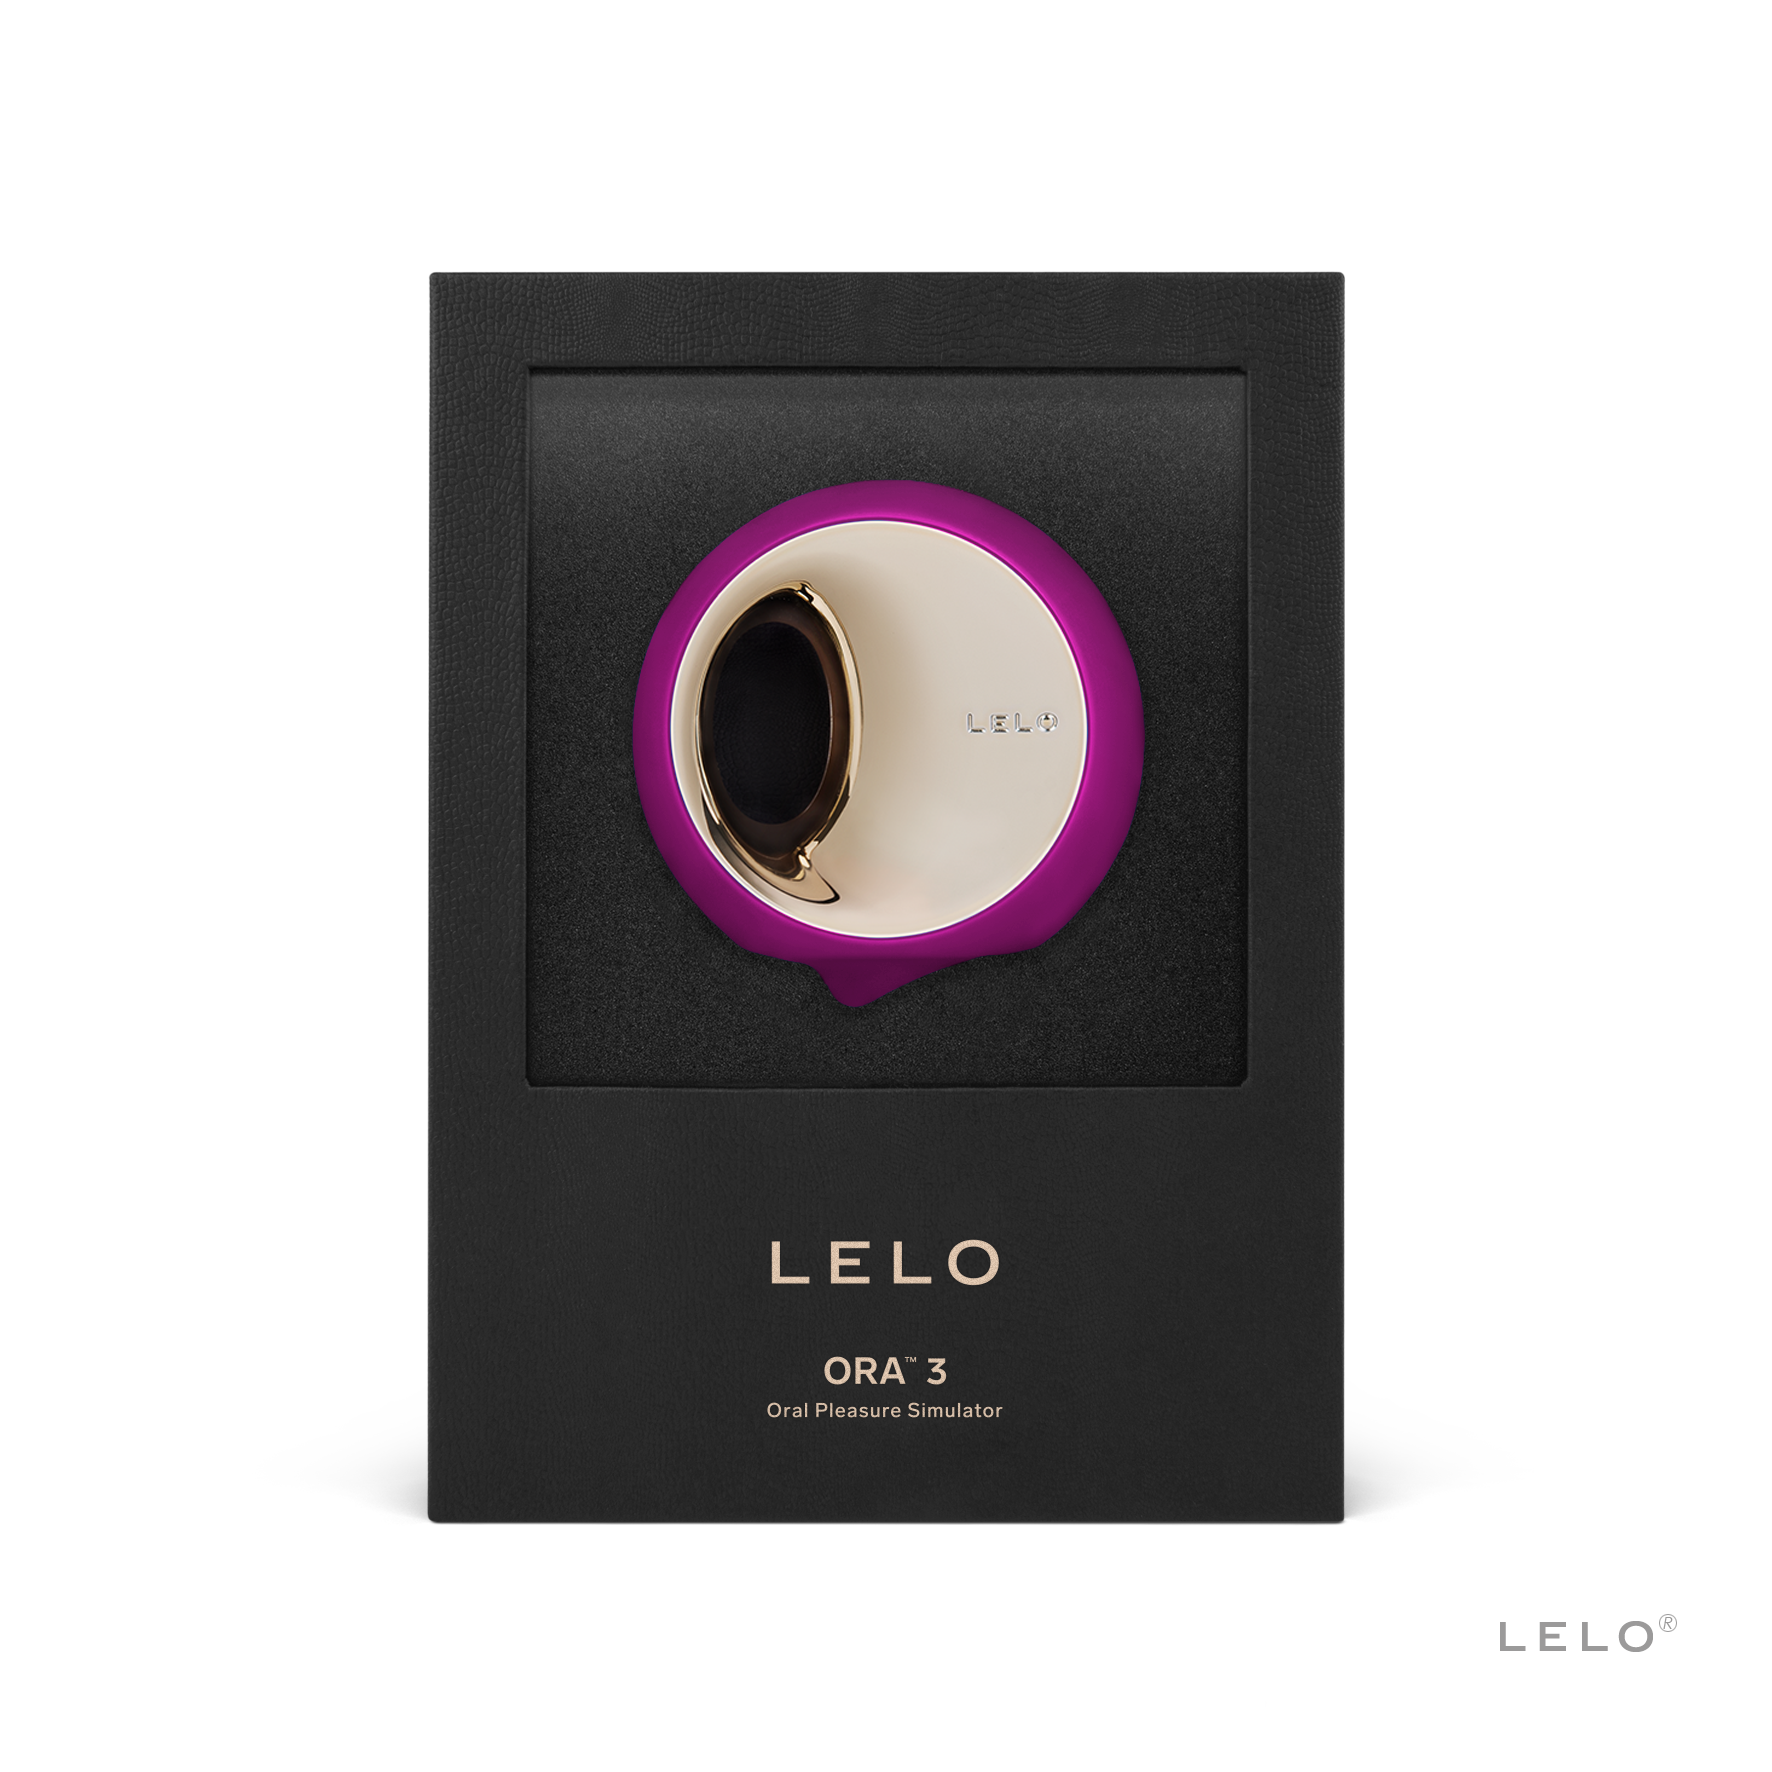 LELO Ora 3 Deep Rose shown in black display packaging